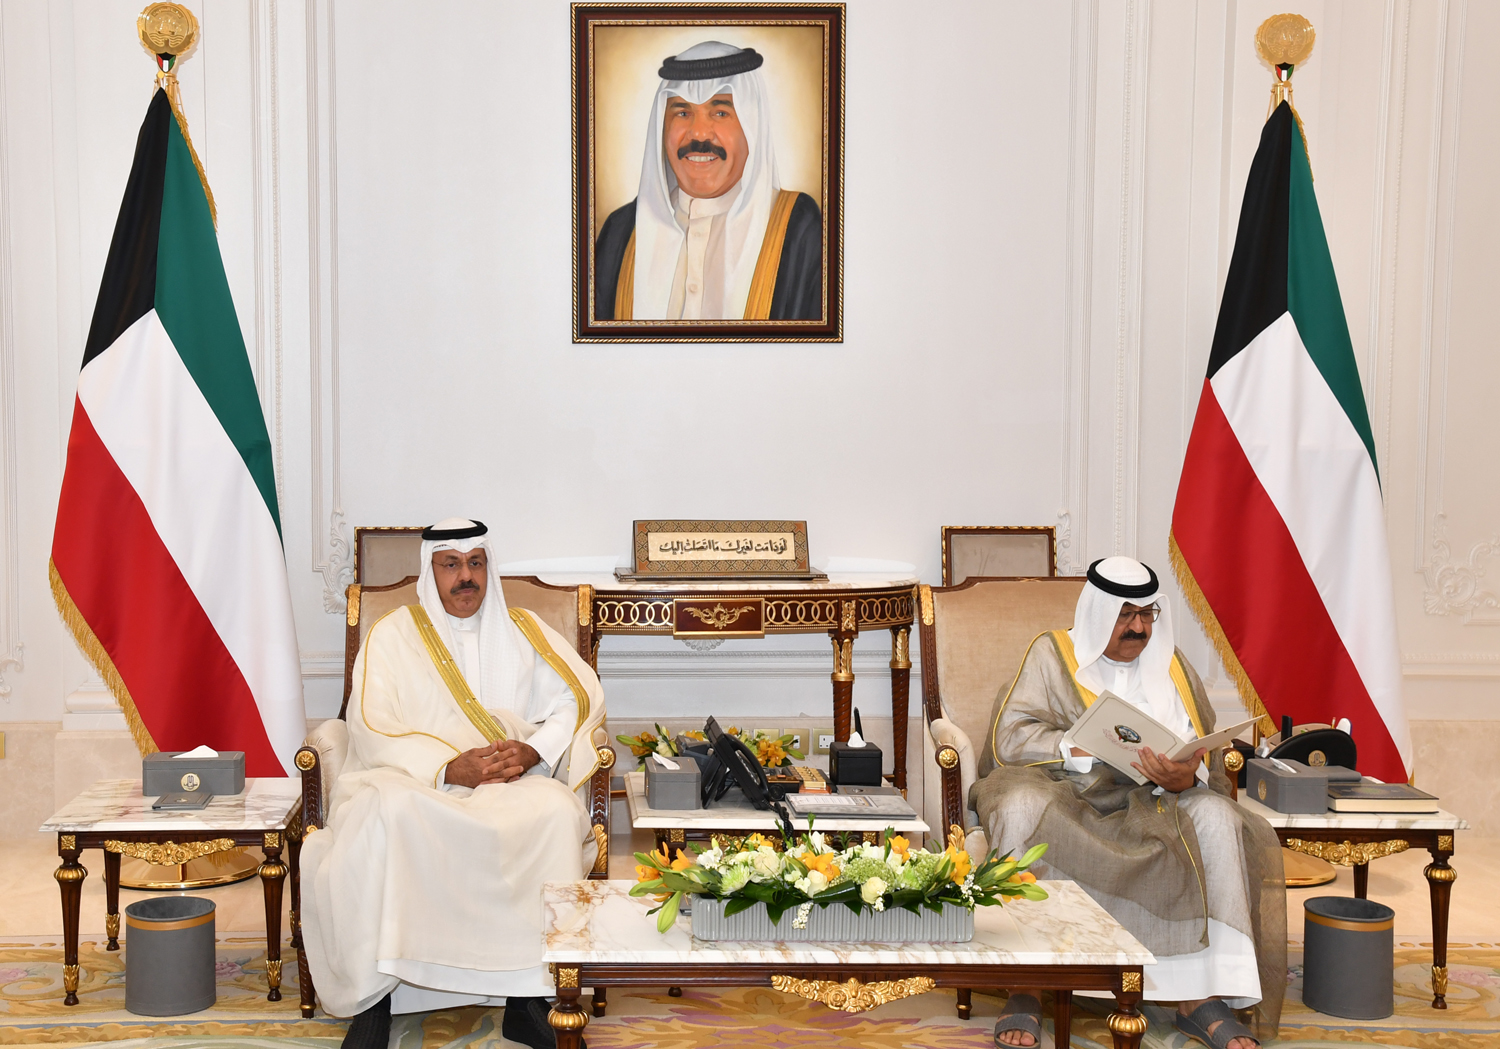 His Highness Crown Prince Sheikh Mishal Al-Ahmad Al-Jaber Al-Sabah receives His Highness Prime Minister Sheikh Ahmad Nawaf Al-Ahmad Al-Sabah